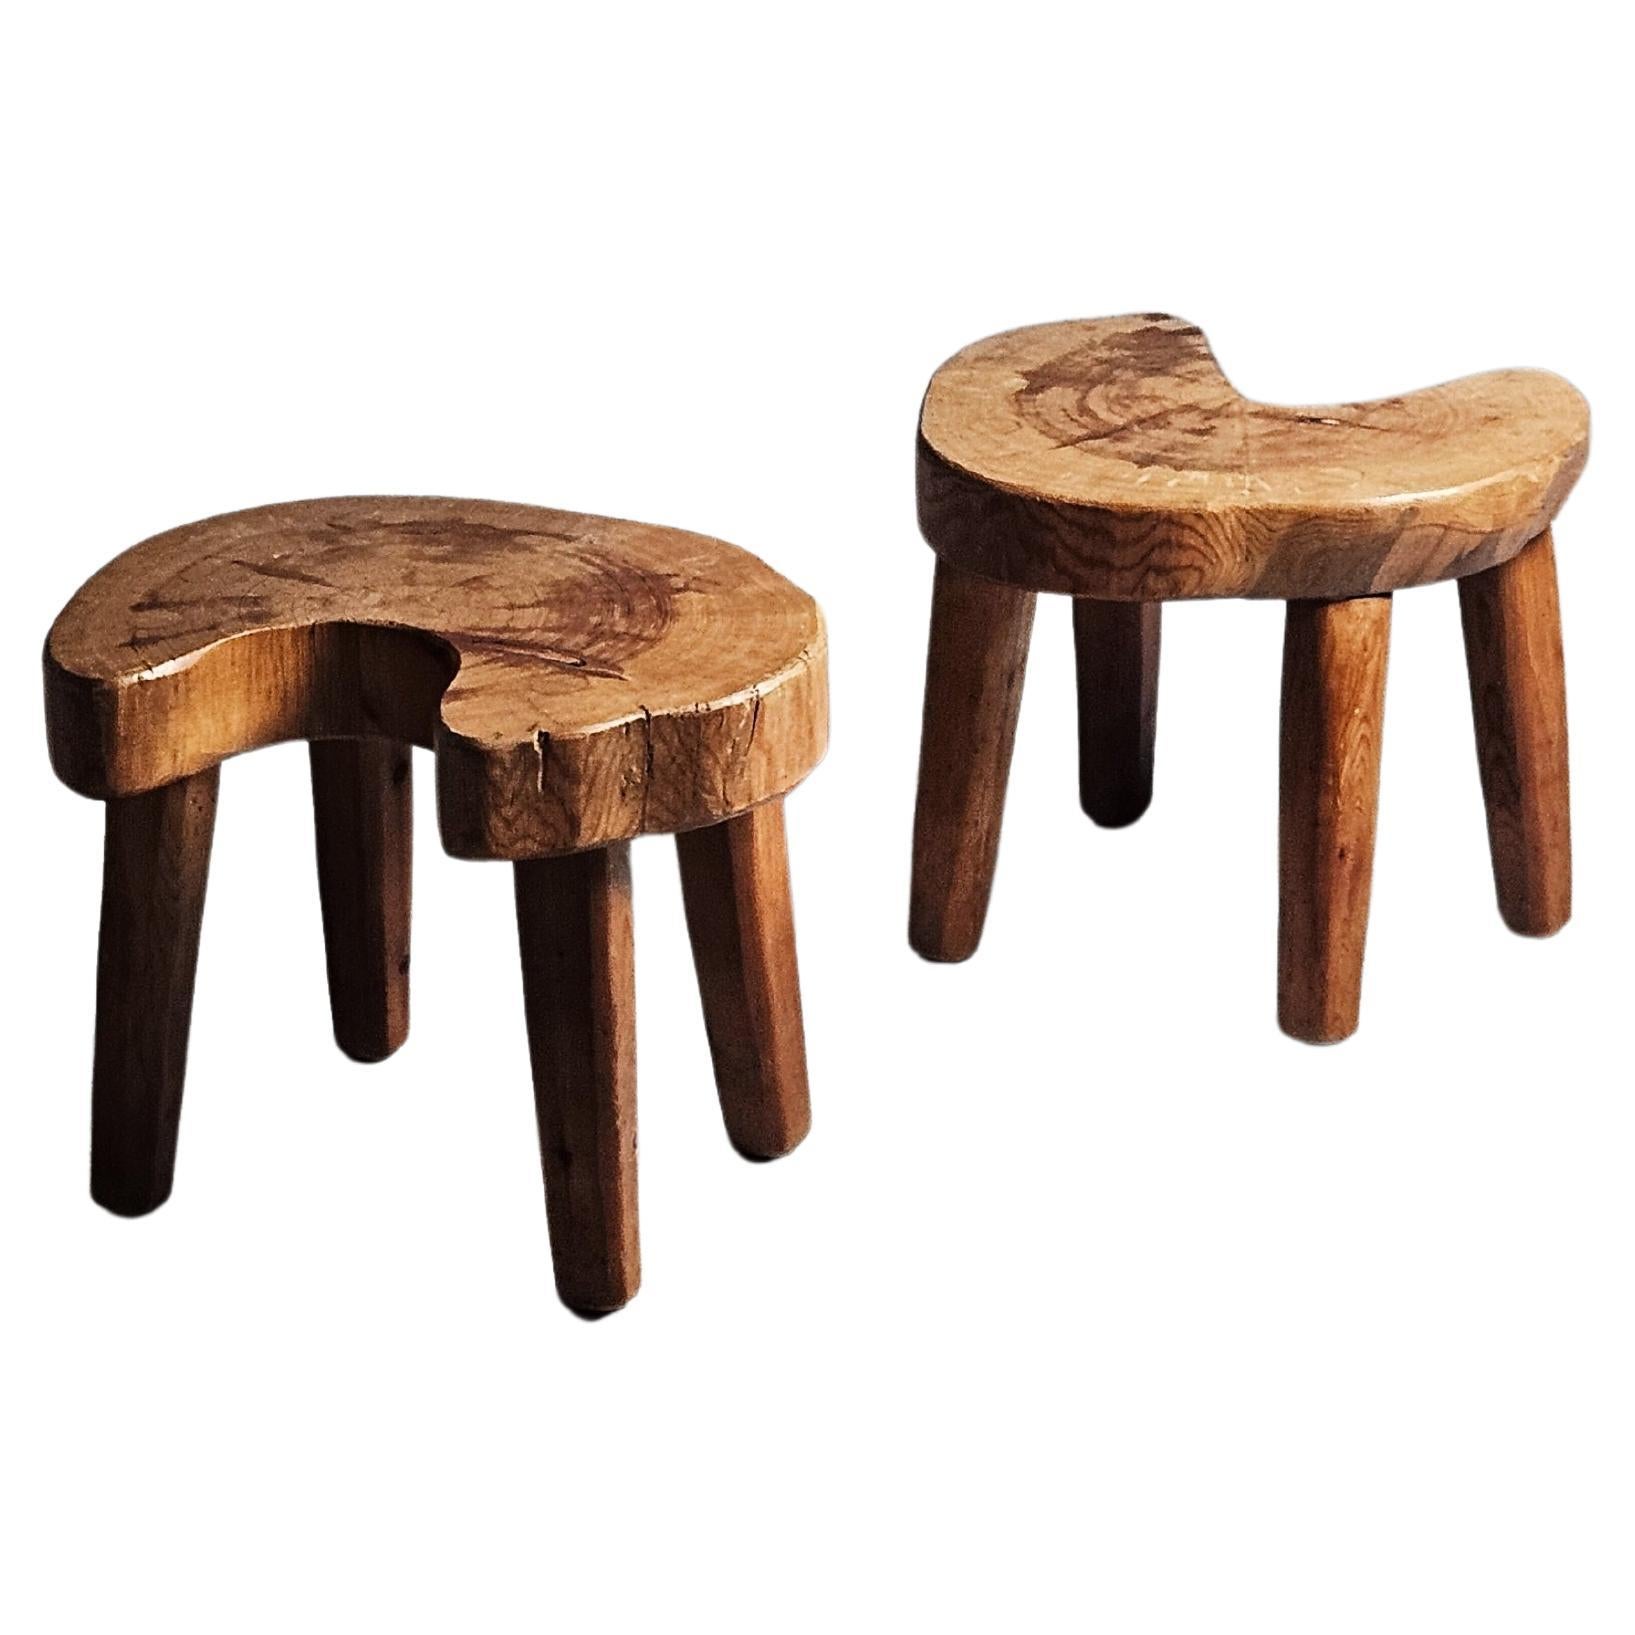 Unique primitive Swedish pine stools For Sale